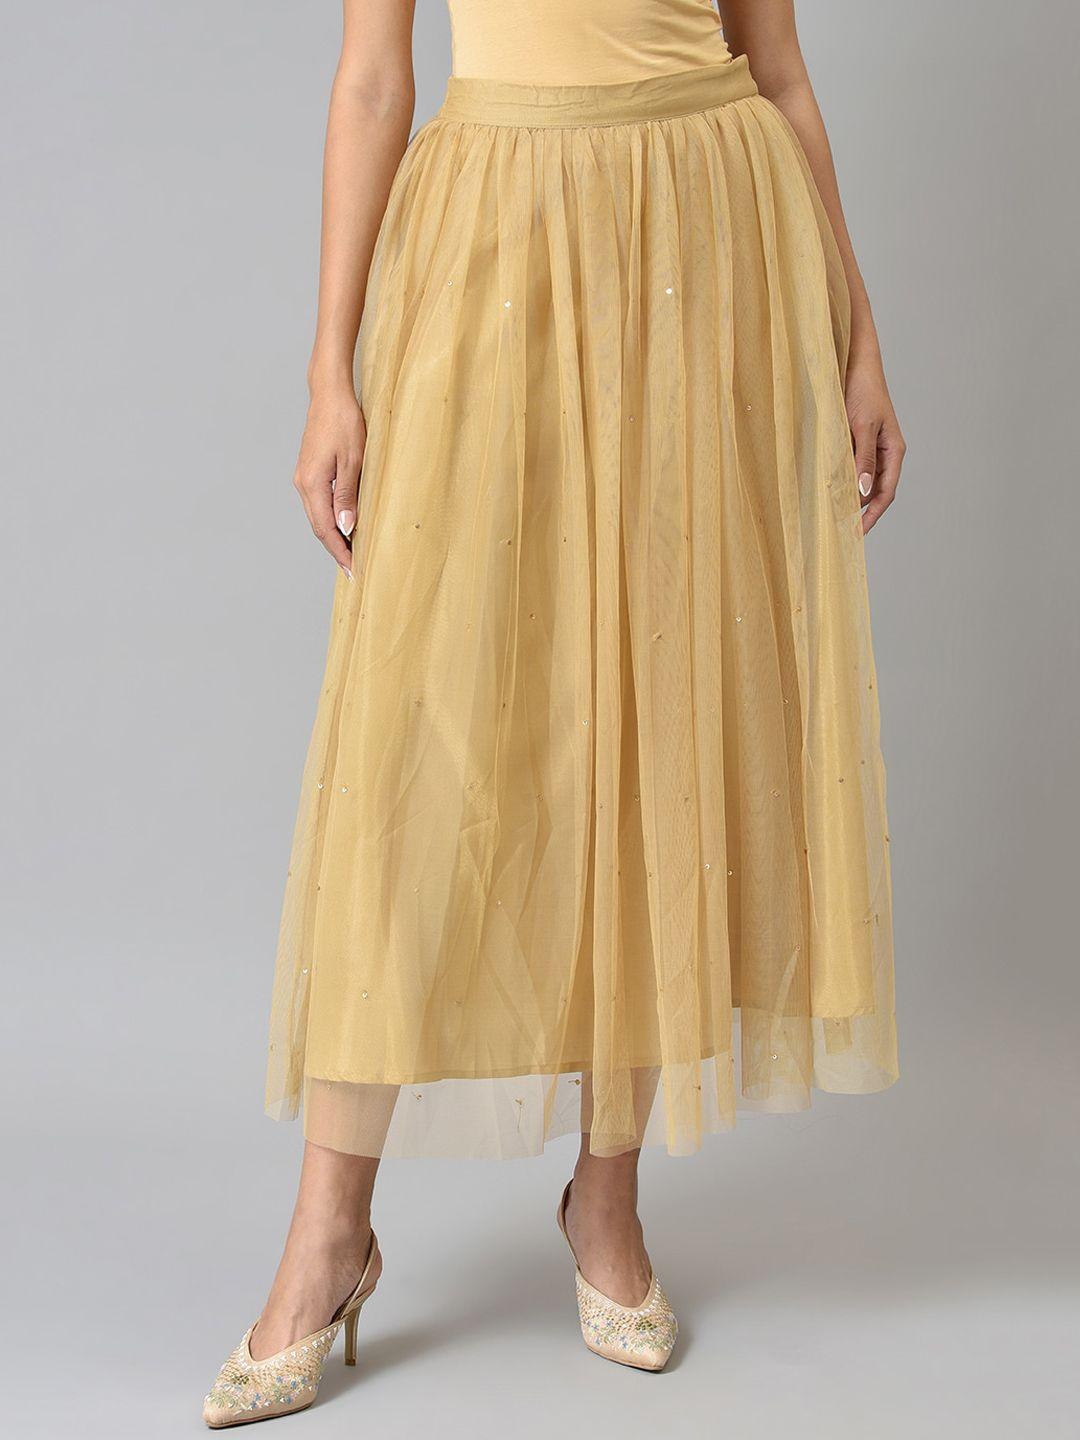 W Women Gold Sequined Midi Skirt